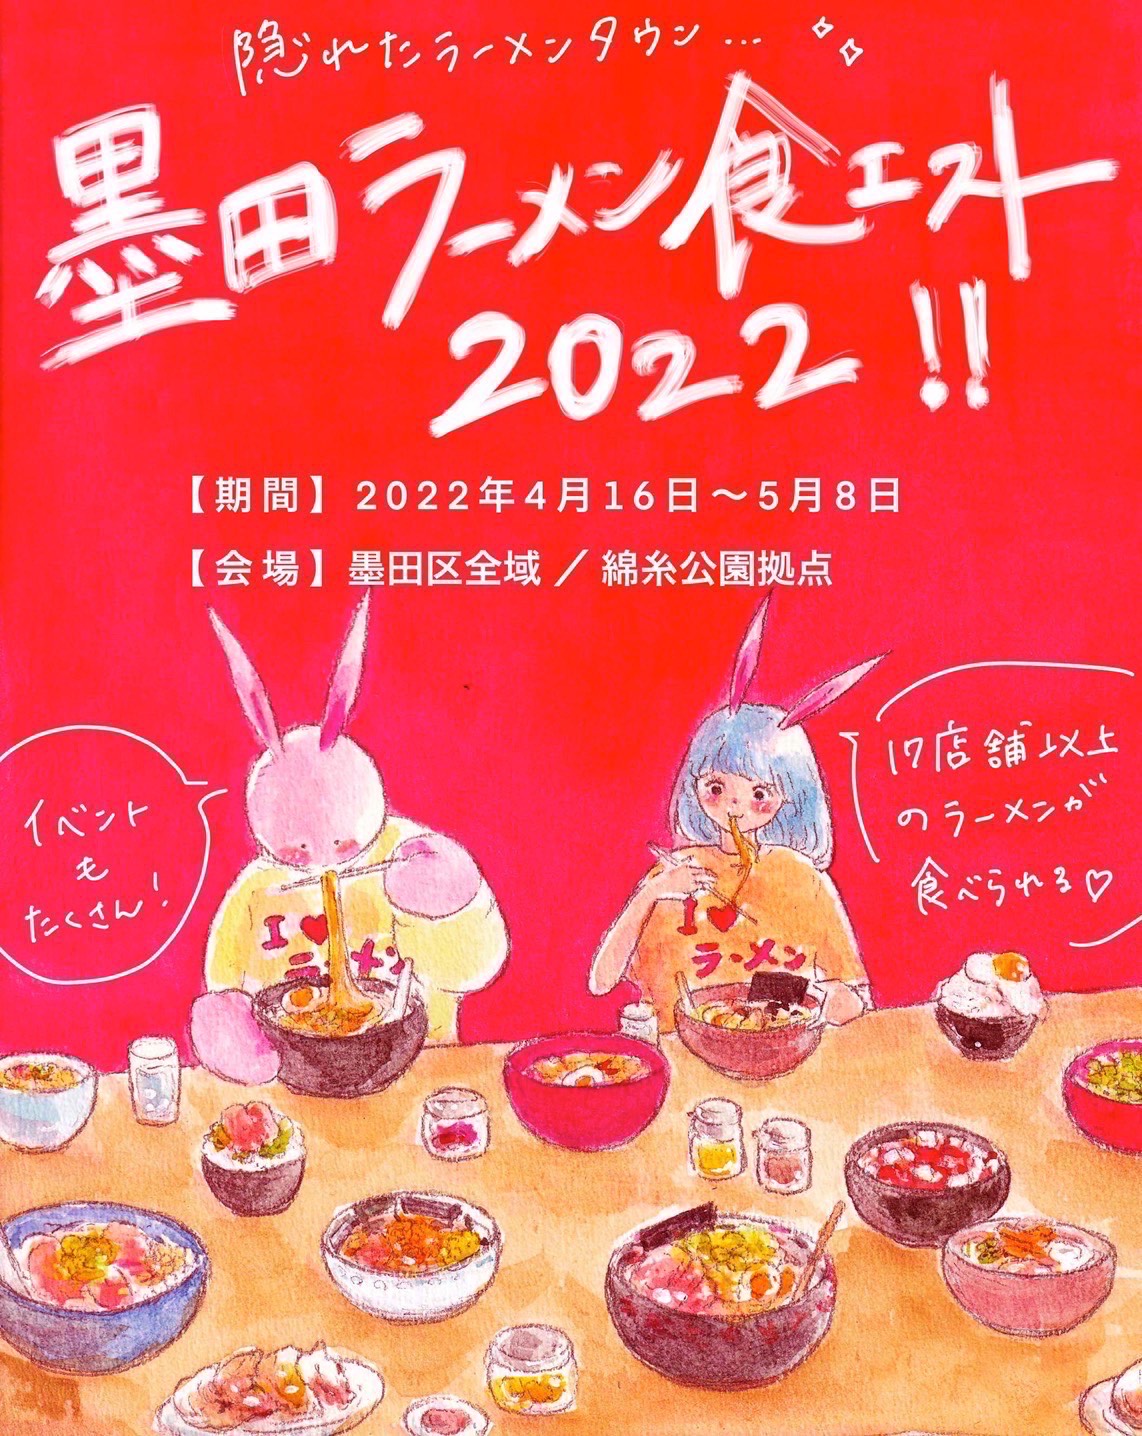 【墨田ラーメン食エスト2022】 出店のお知らせ